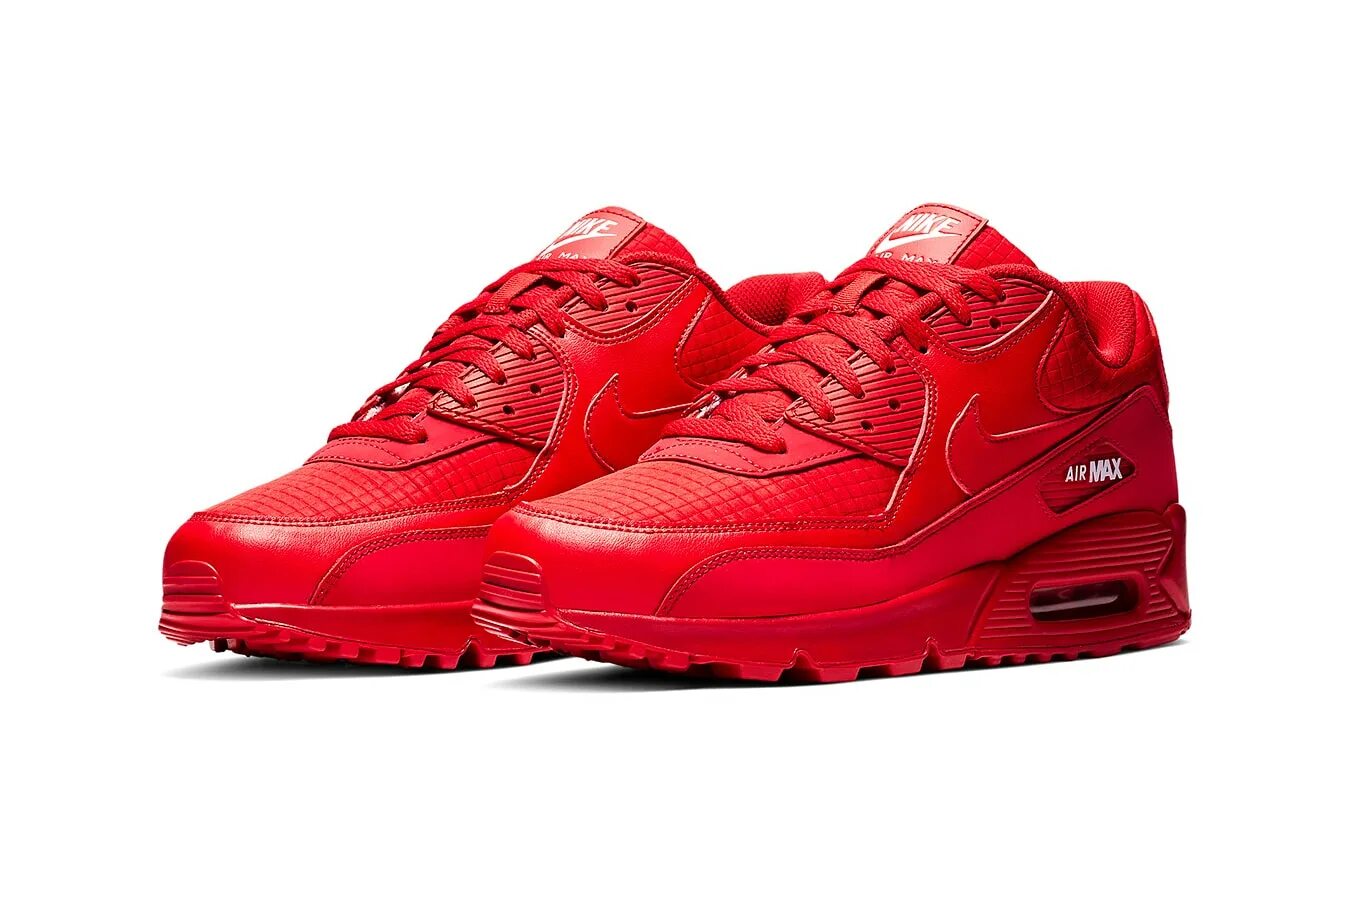 Nike Air Max 90 Red. Nike Air Max красные. Nike Air Max 90 Limited Edition. Nike Air Max 90 мужские красные. Интернет магазин кроссовок найк мужские